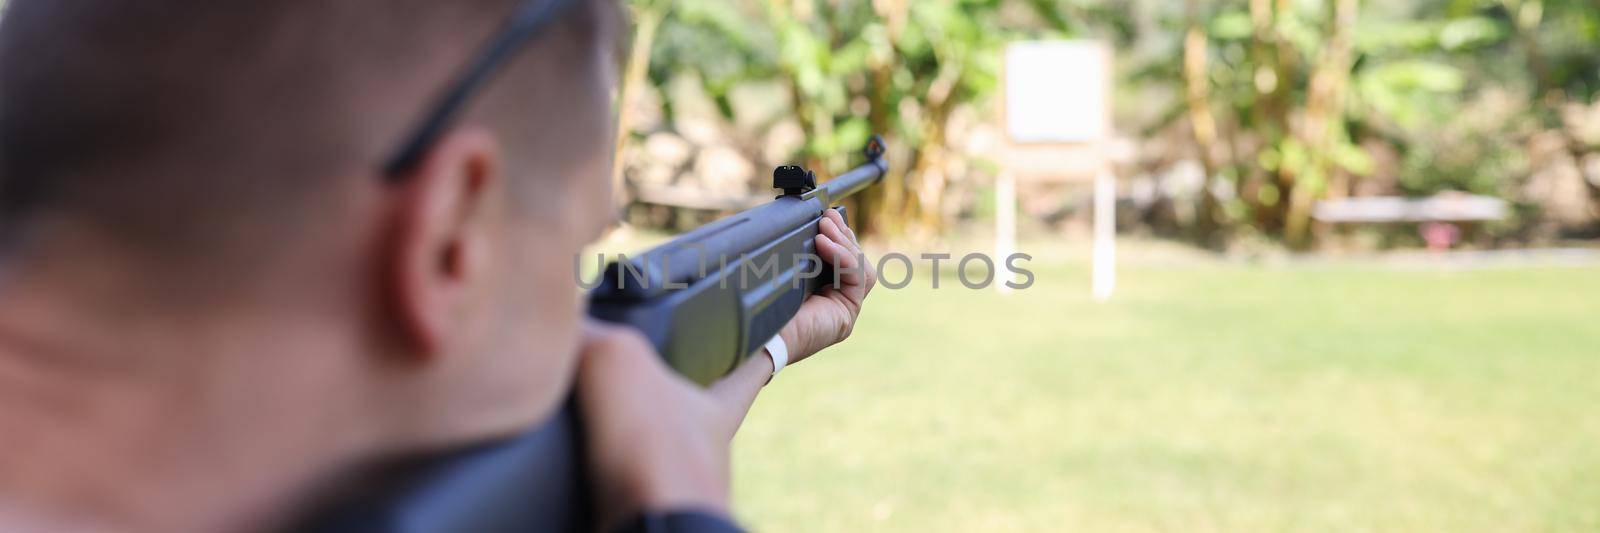 Man shooting gun at target on vacation closeup by kuprevich